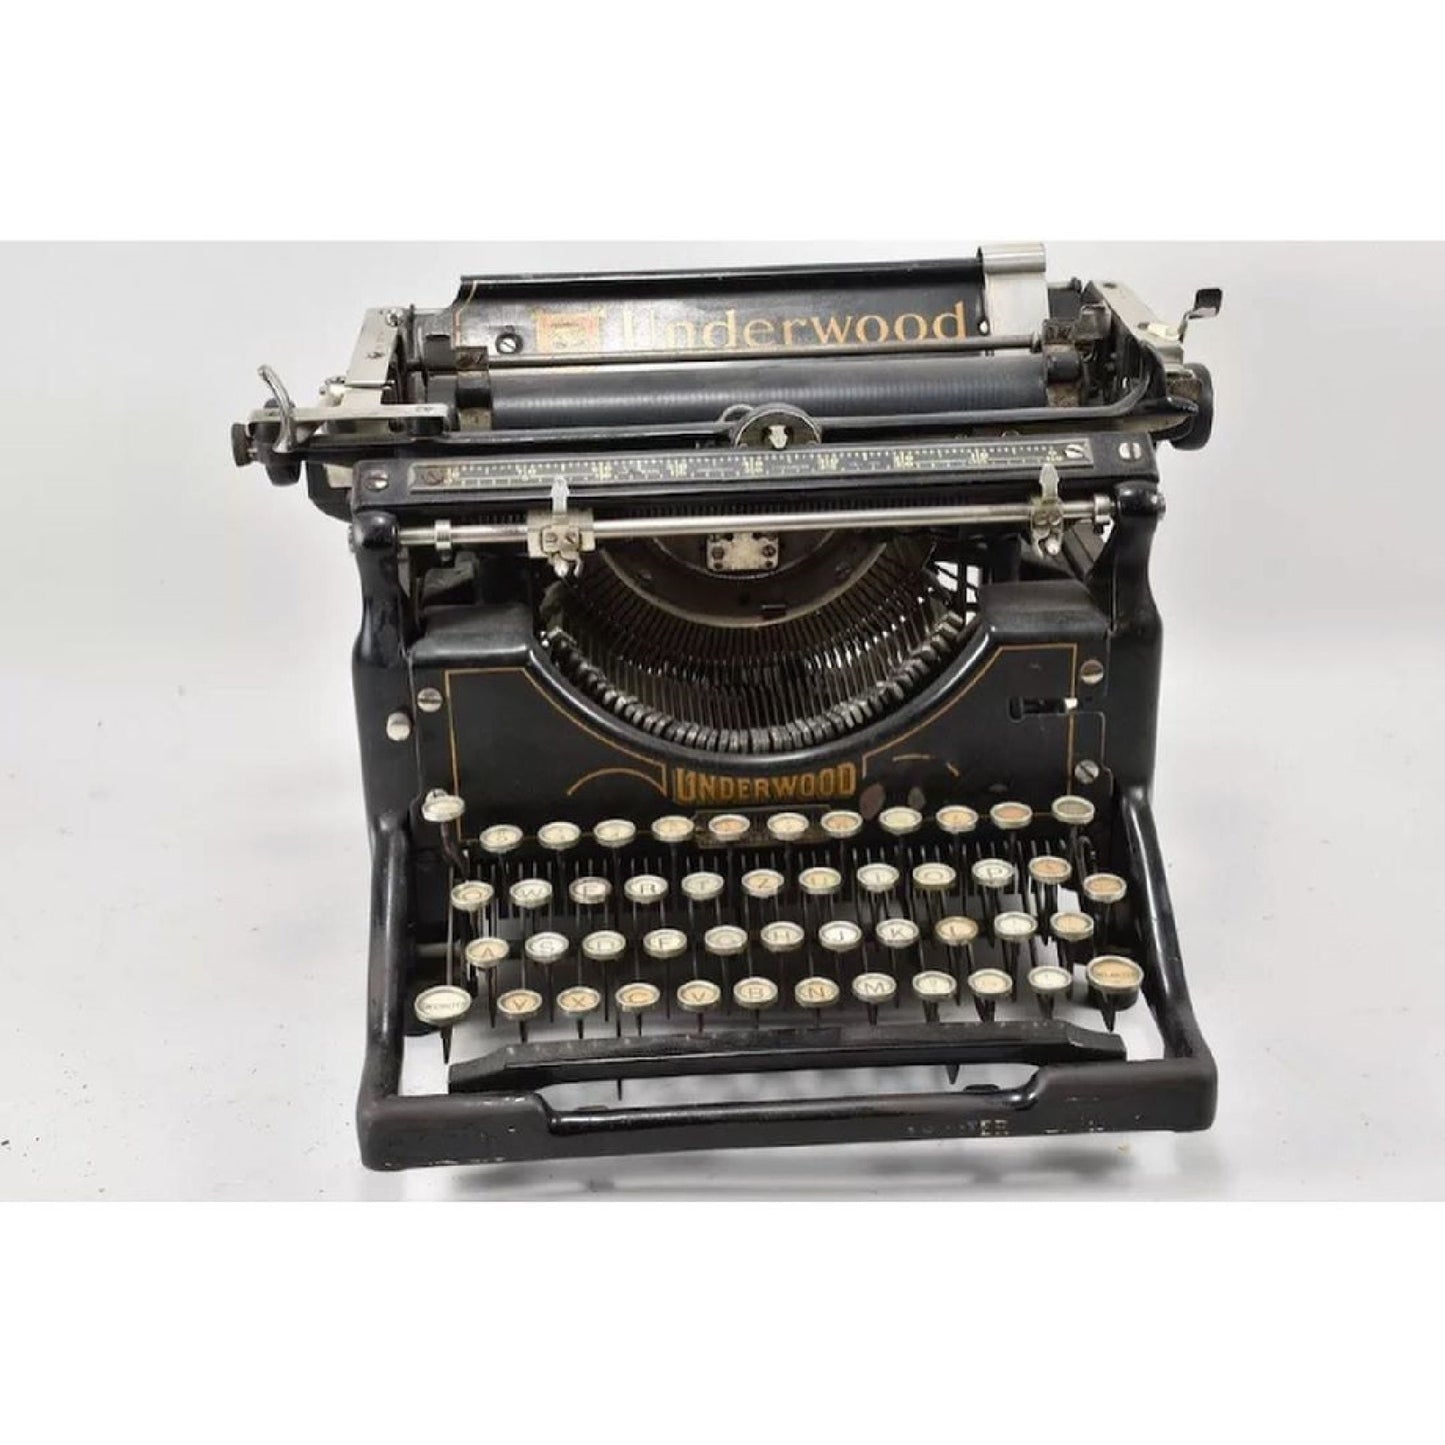 Underwood Typewriter | Antique Typewriter | Working Typewriter | Working Perfectly | Fabulous Gift,typewriter working